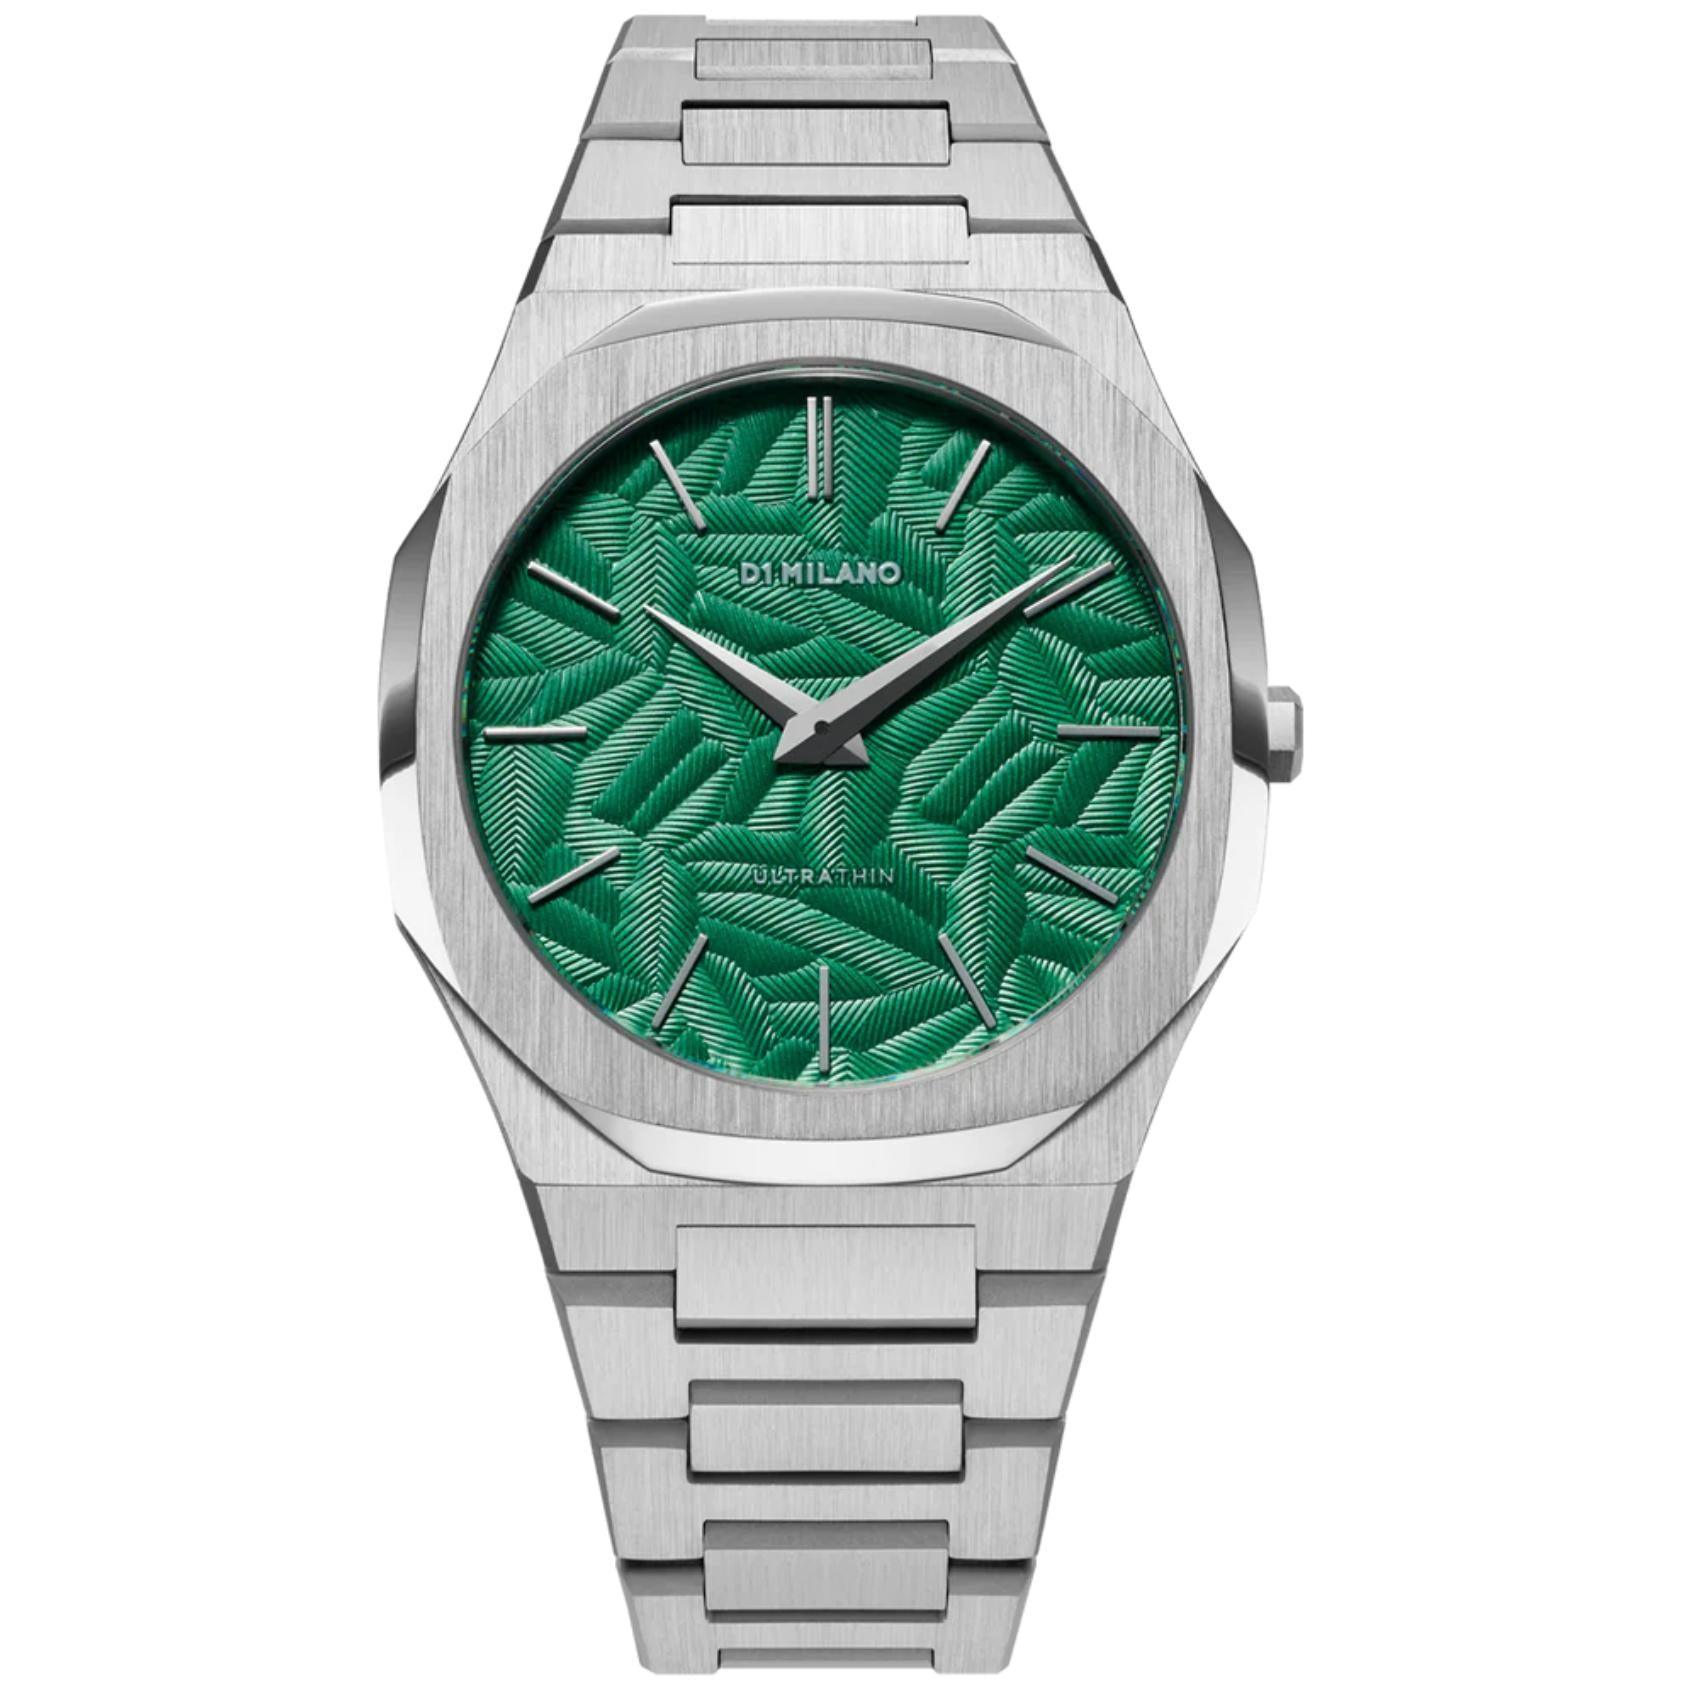 Αντρικό ρολόι D1 Milano Ultra Thin Fir Green D1-UTBJ34 με ασημί ατσάλινο μπρασελέ και πράσινο καντράν 40mm με οκτάγωνο σχήμα.